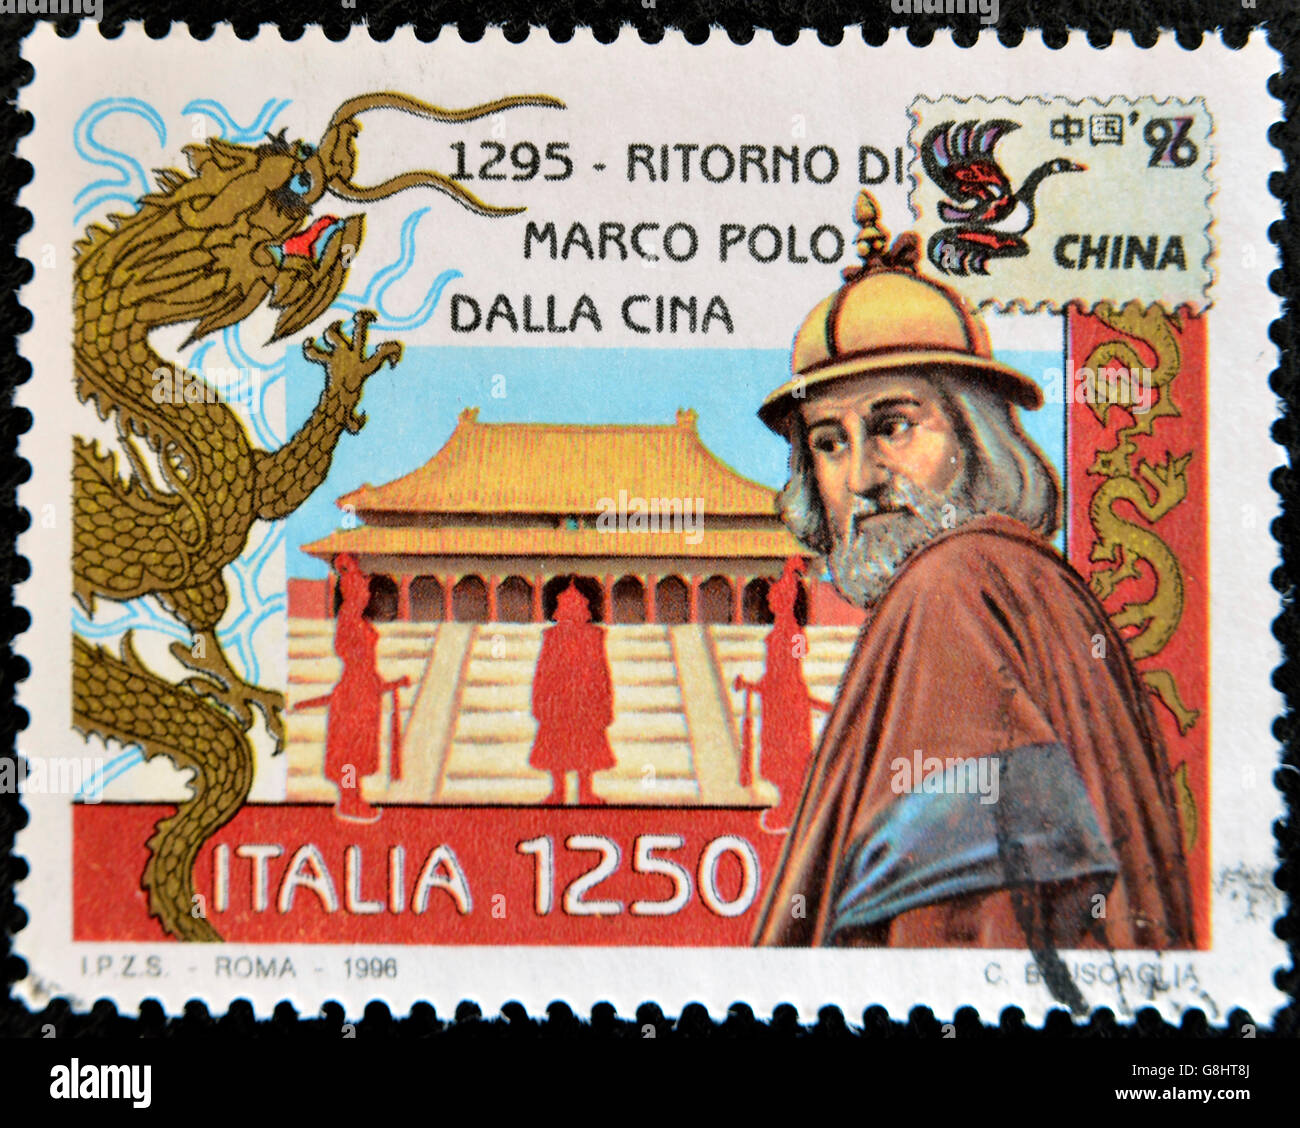 Italie - circa 1996 : timbre imprimé en Italie montre le retour de Marco Polo en Chine, circa 1996 Banque D'Images